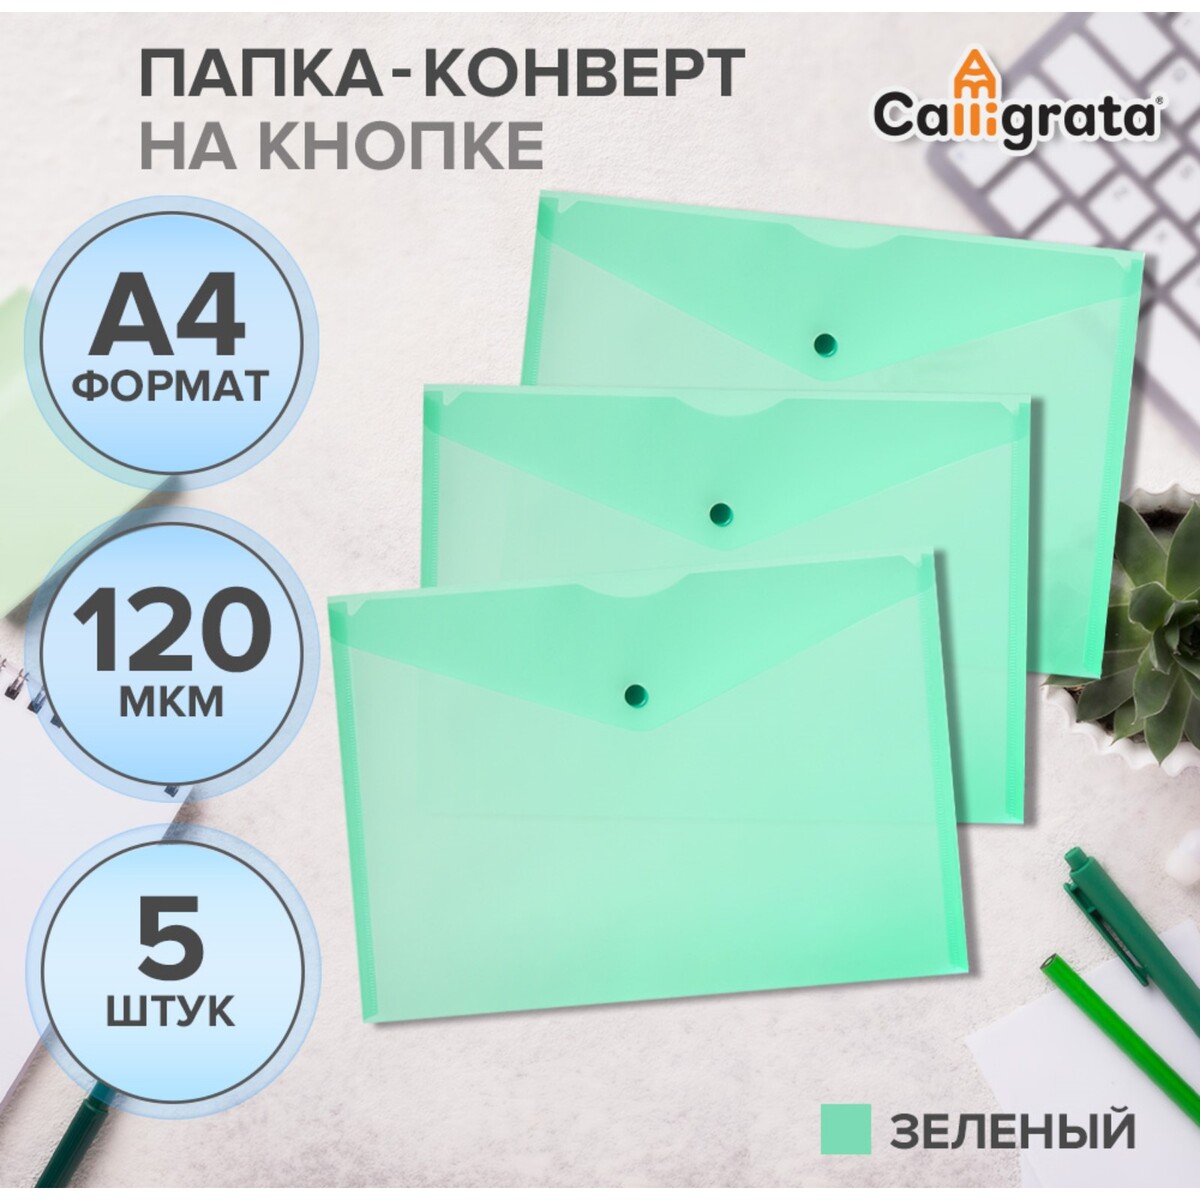 Набор папок-конверов на кнопке 5 шт. calligrata, а4, 120мкм, зеленые